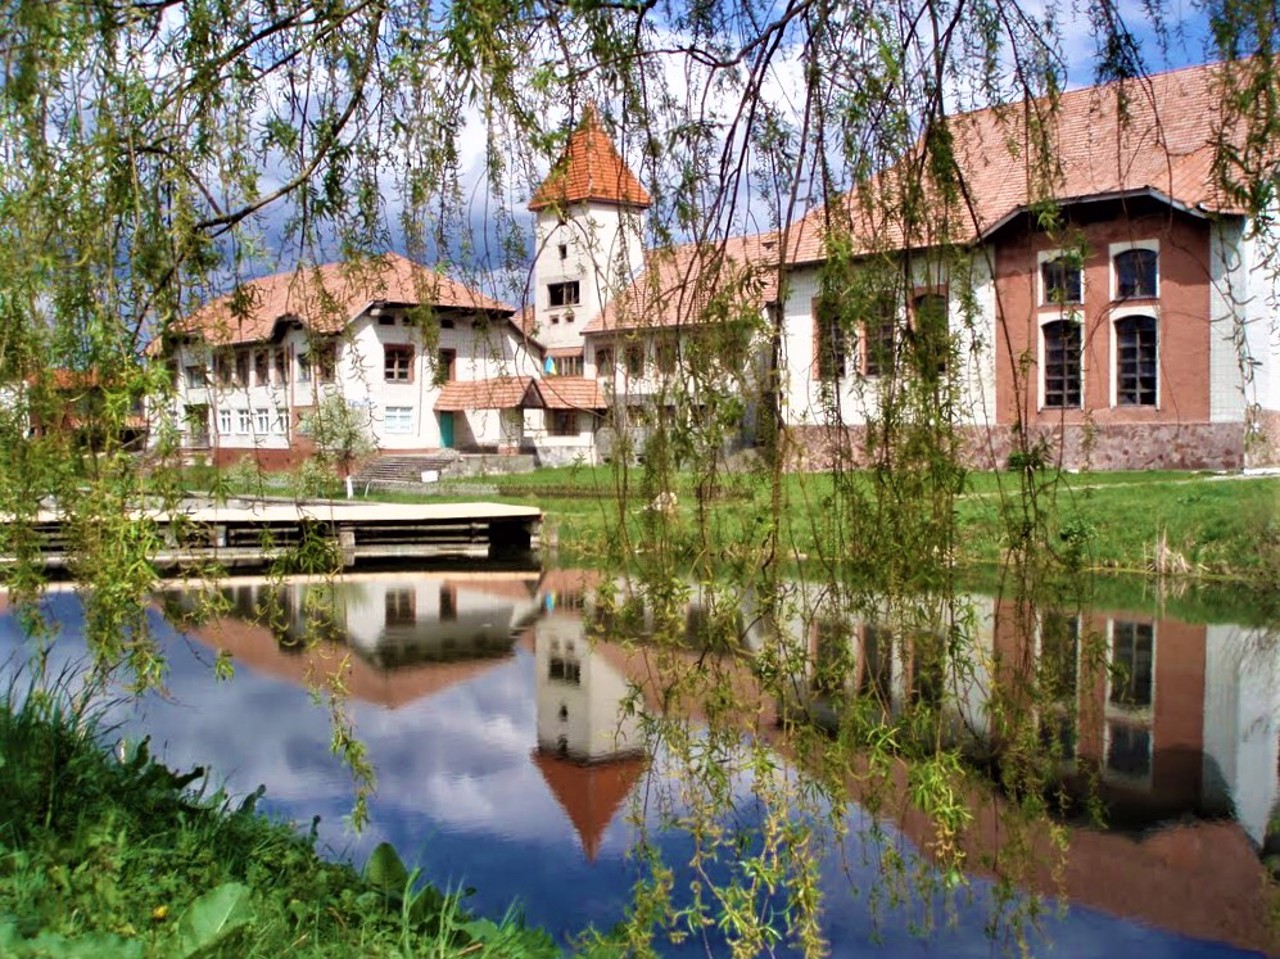 Zvenyhorod village, Lviv region